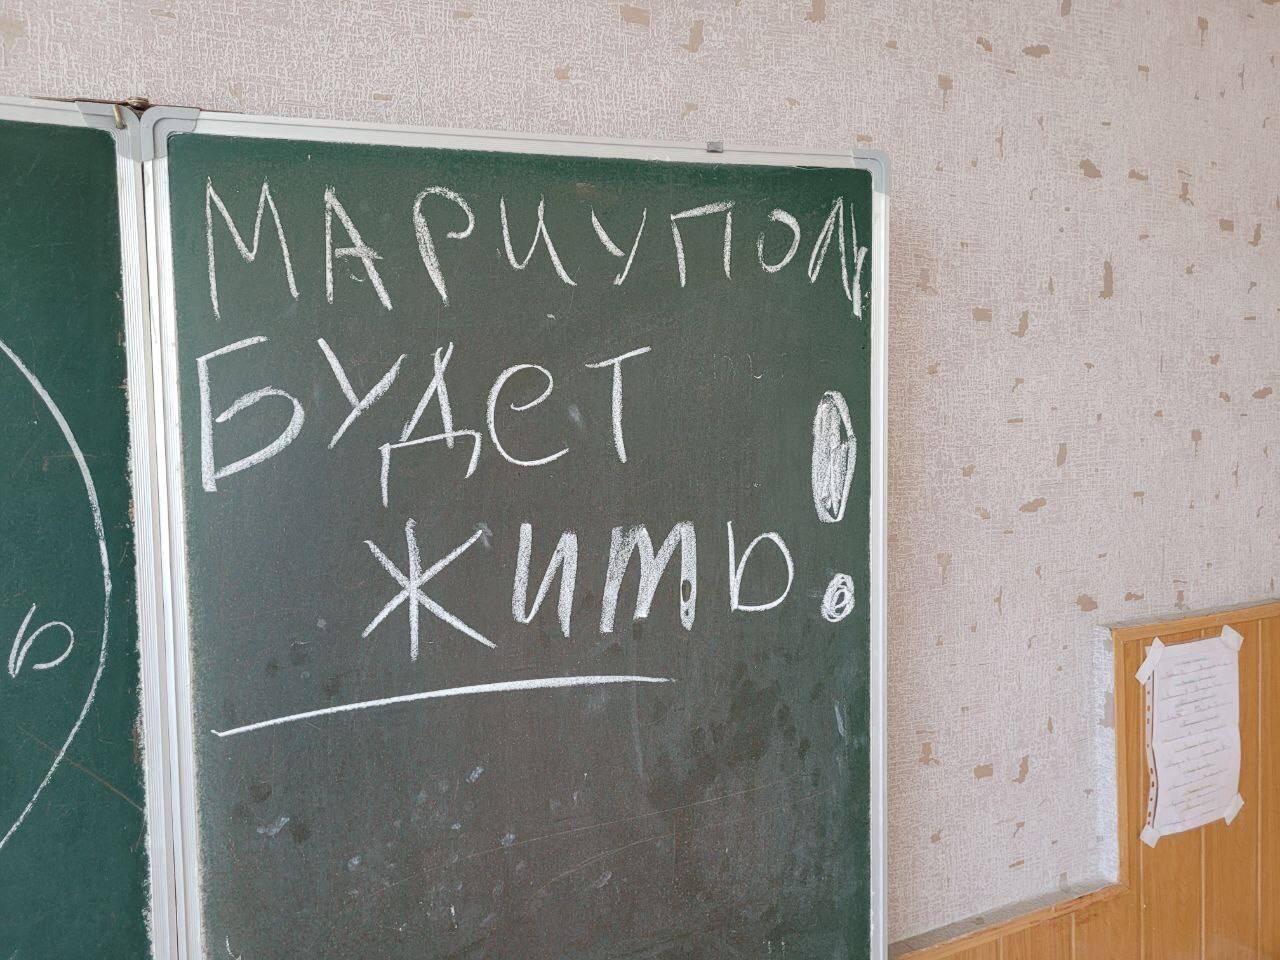 Надпись на доске в местной в школе